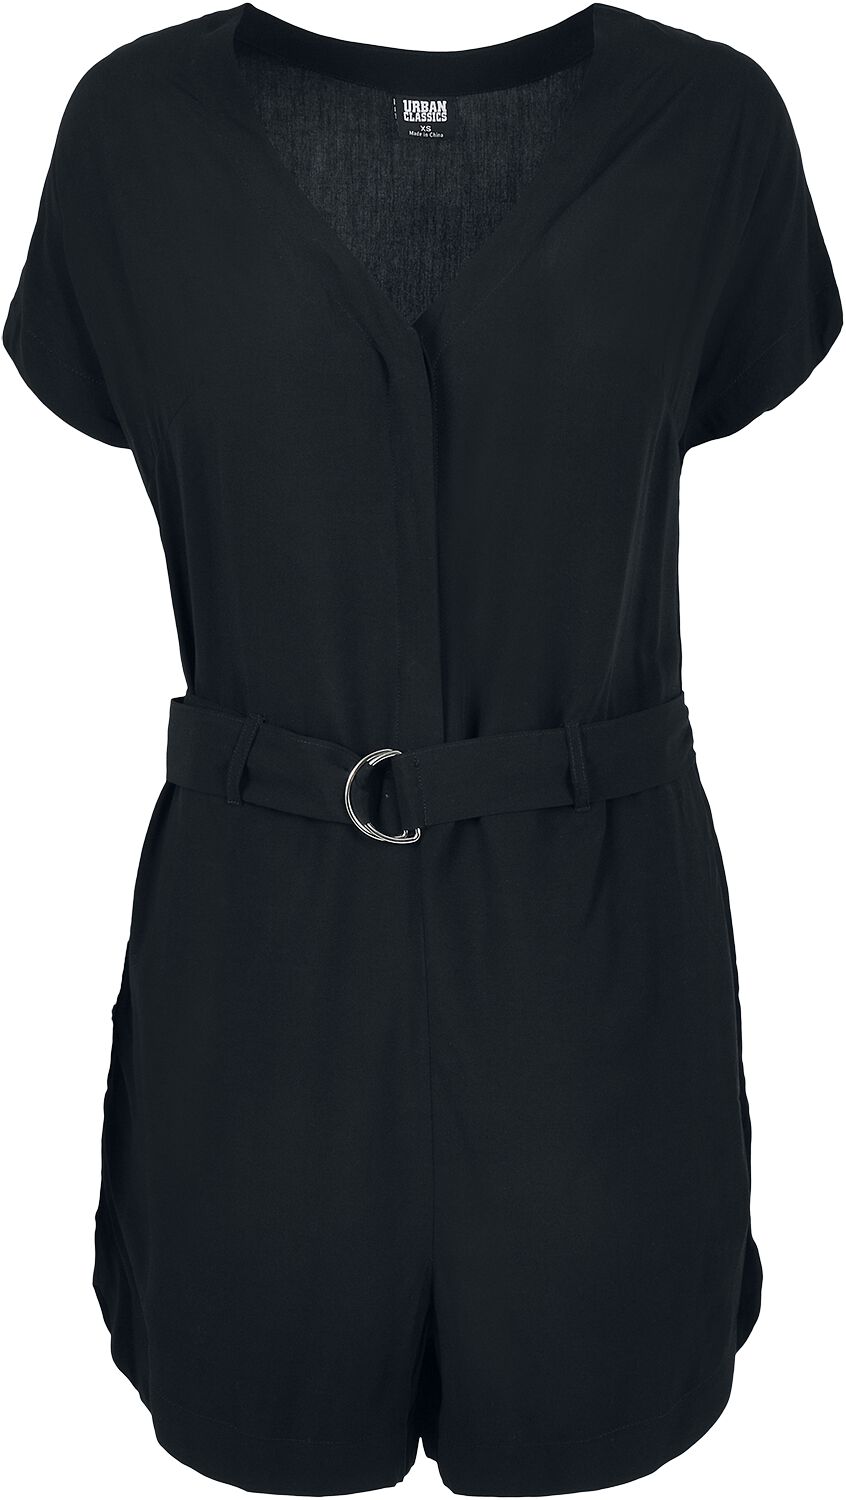 Urban Classics Jumpsuit - Ladies Short Black Viscose Belt Jumpsuit - XS bis XL - für Damen - Größe XL - schwarz